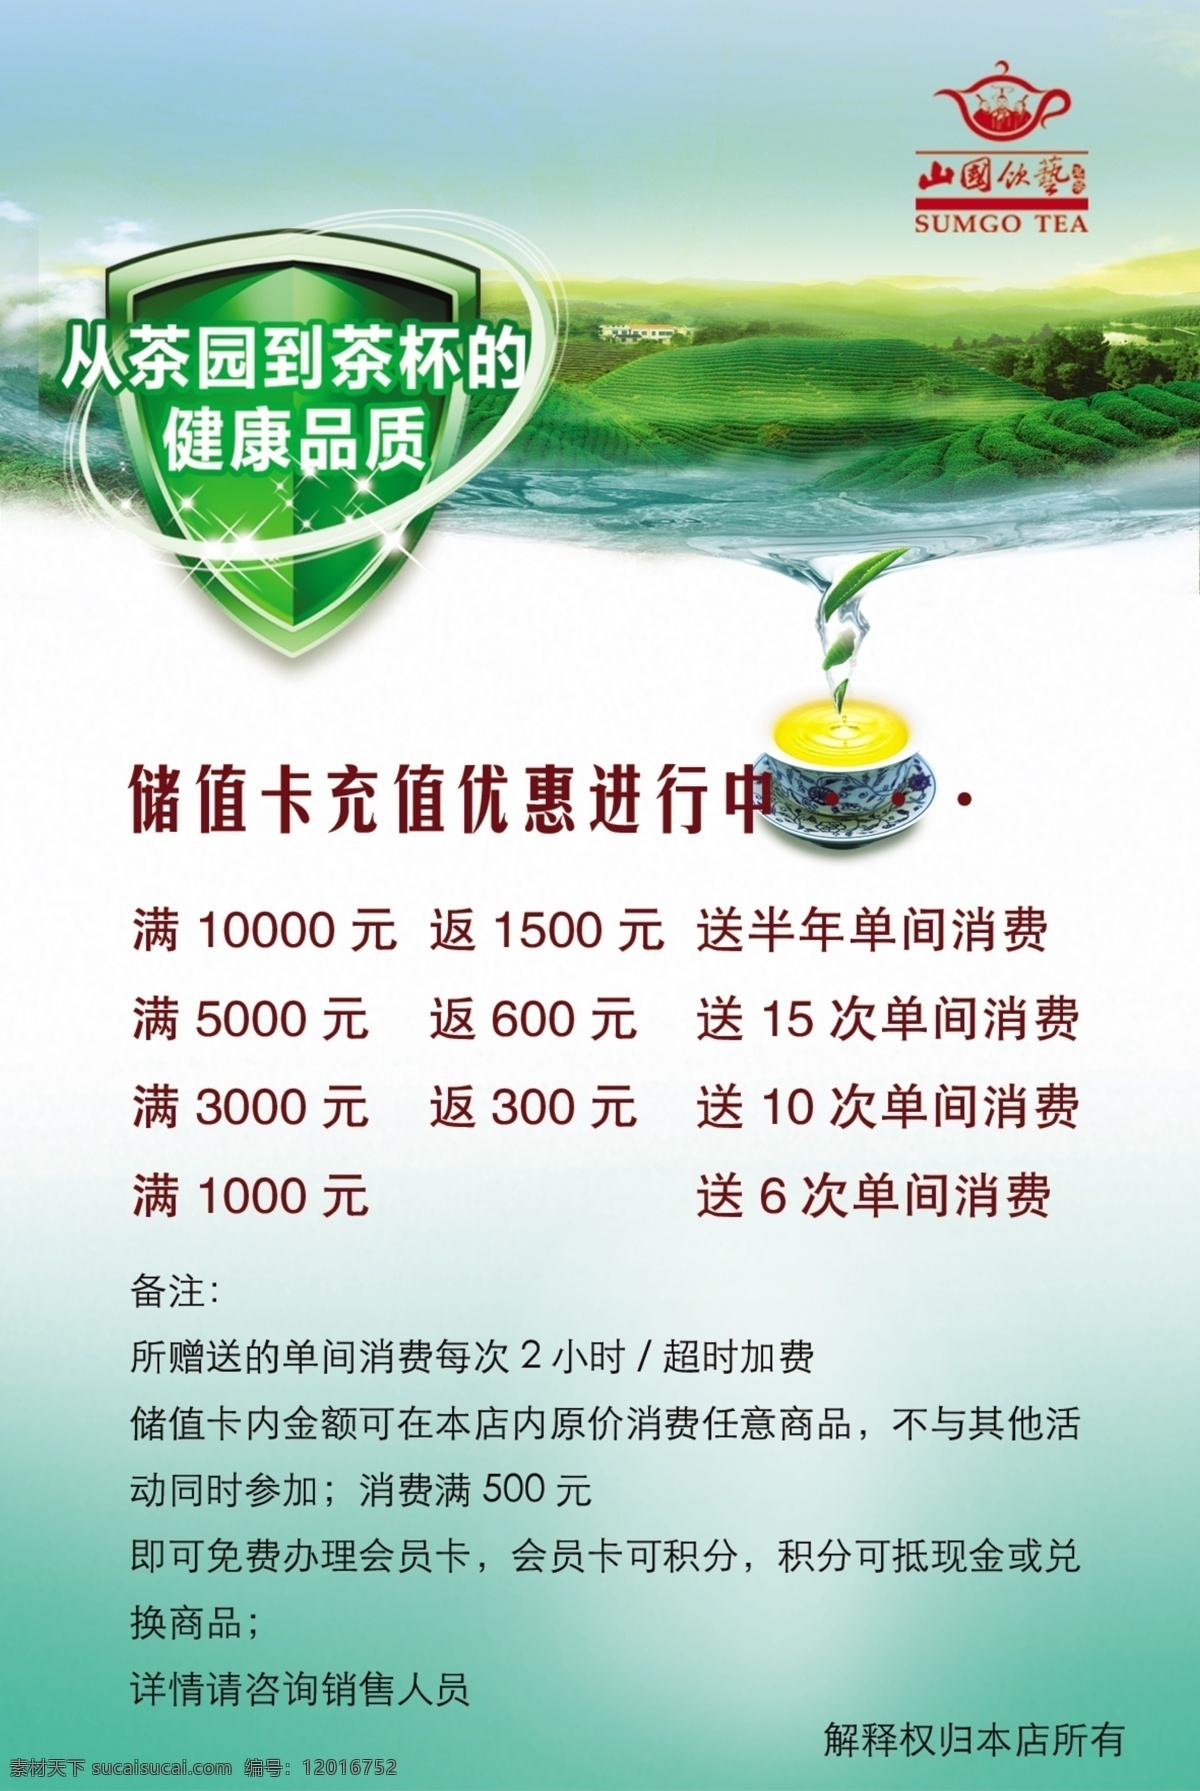 茶叶海报 茶园 安全标识 绿色底色 茶水 茶叶 水 广告设计模板 源文件